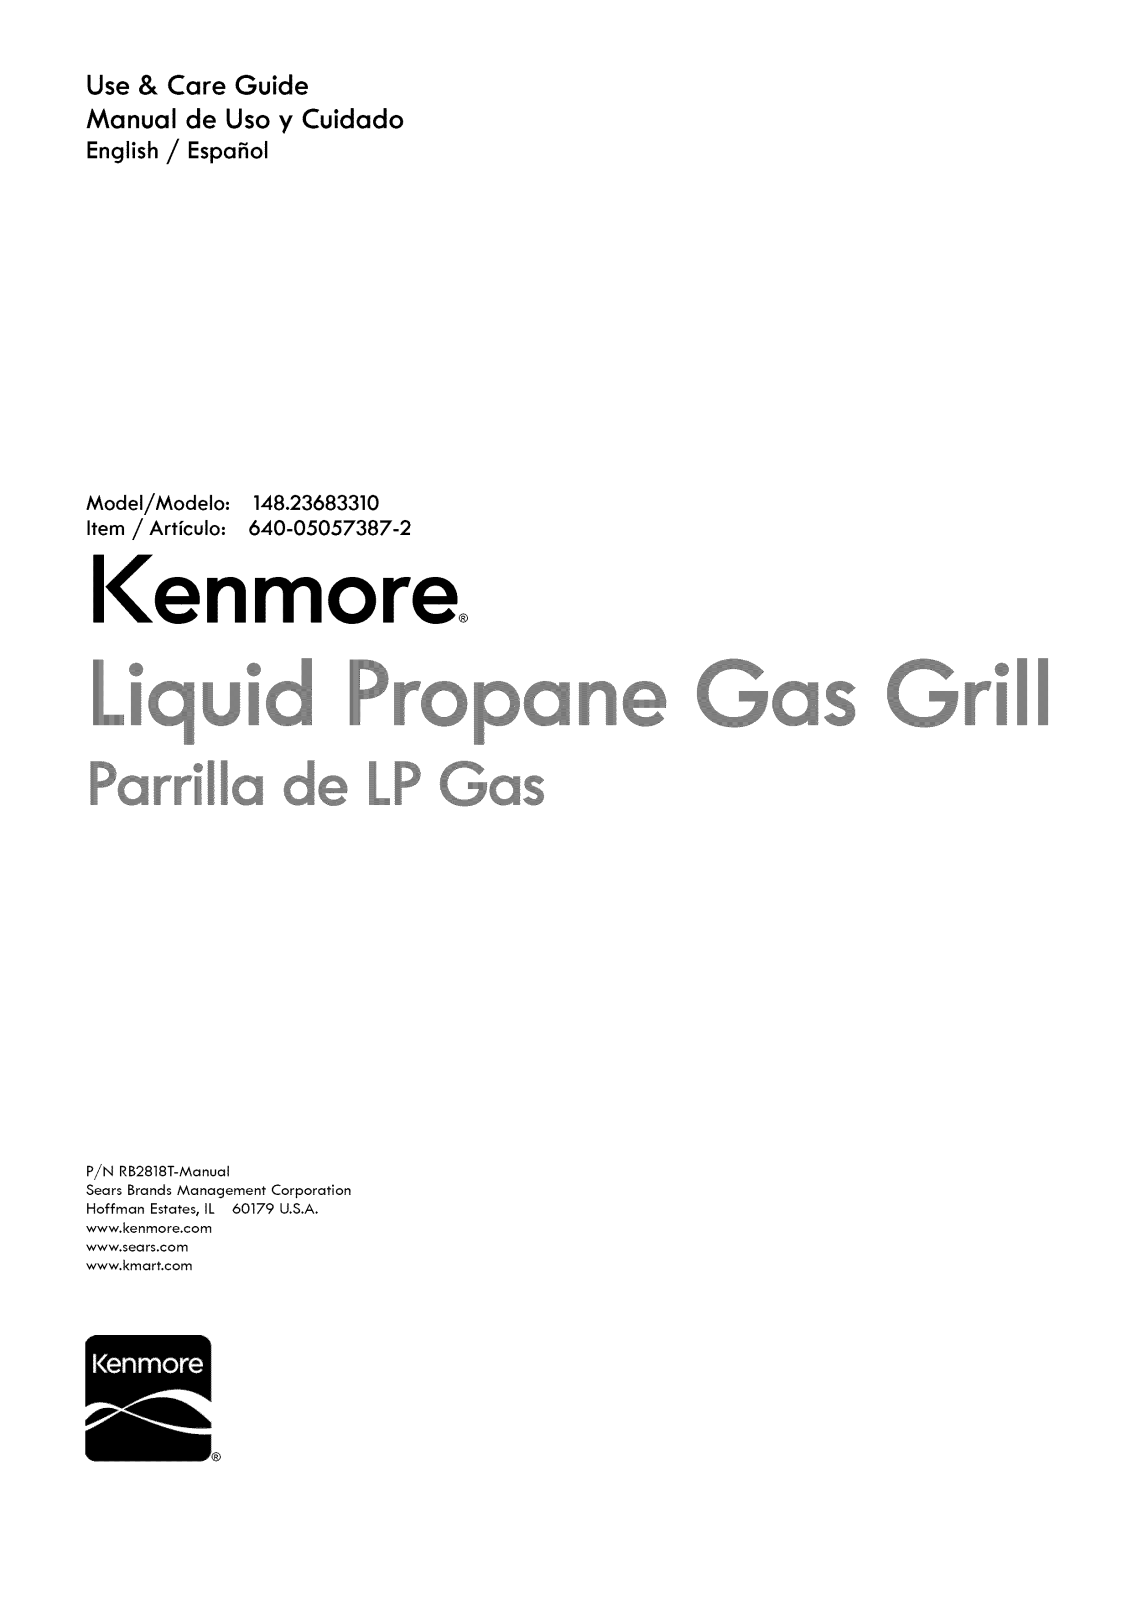 Kenmore 640-05057387-2 Owner’s Manual